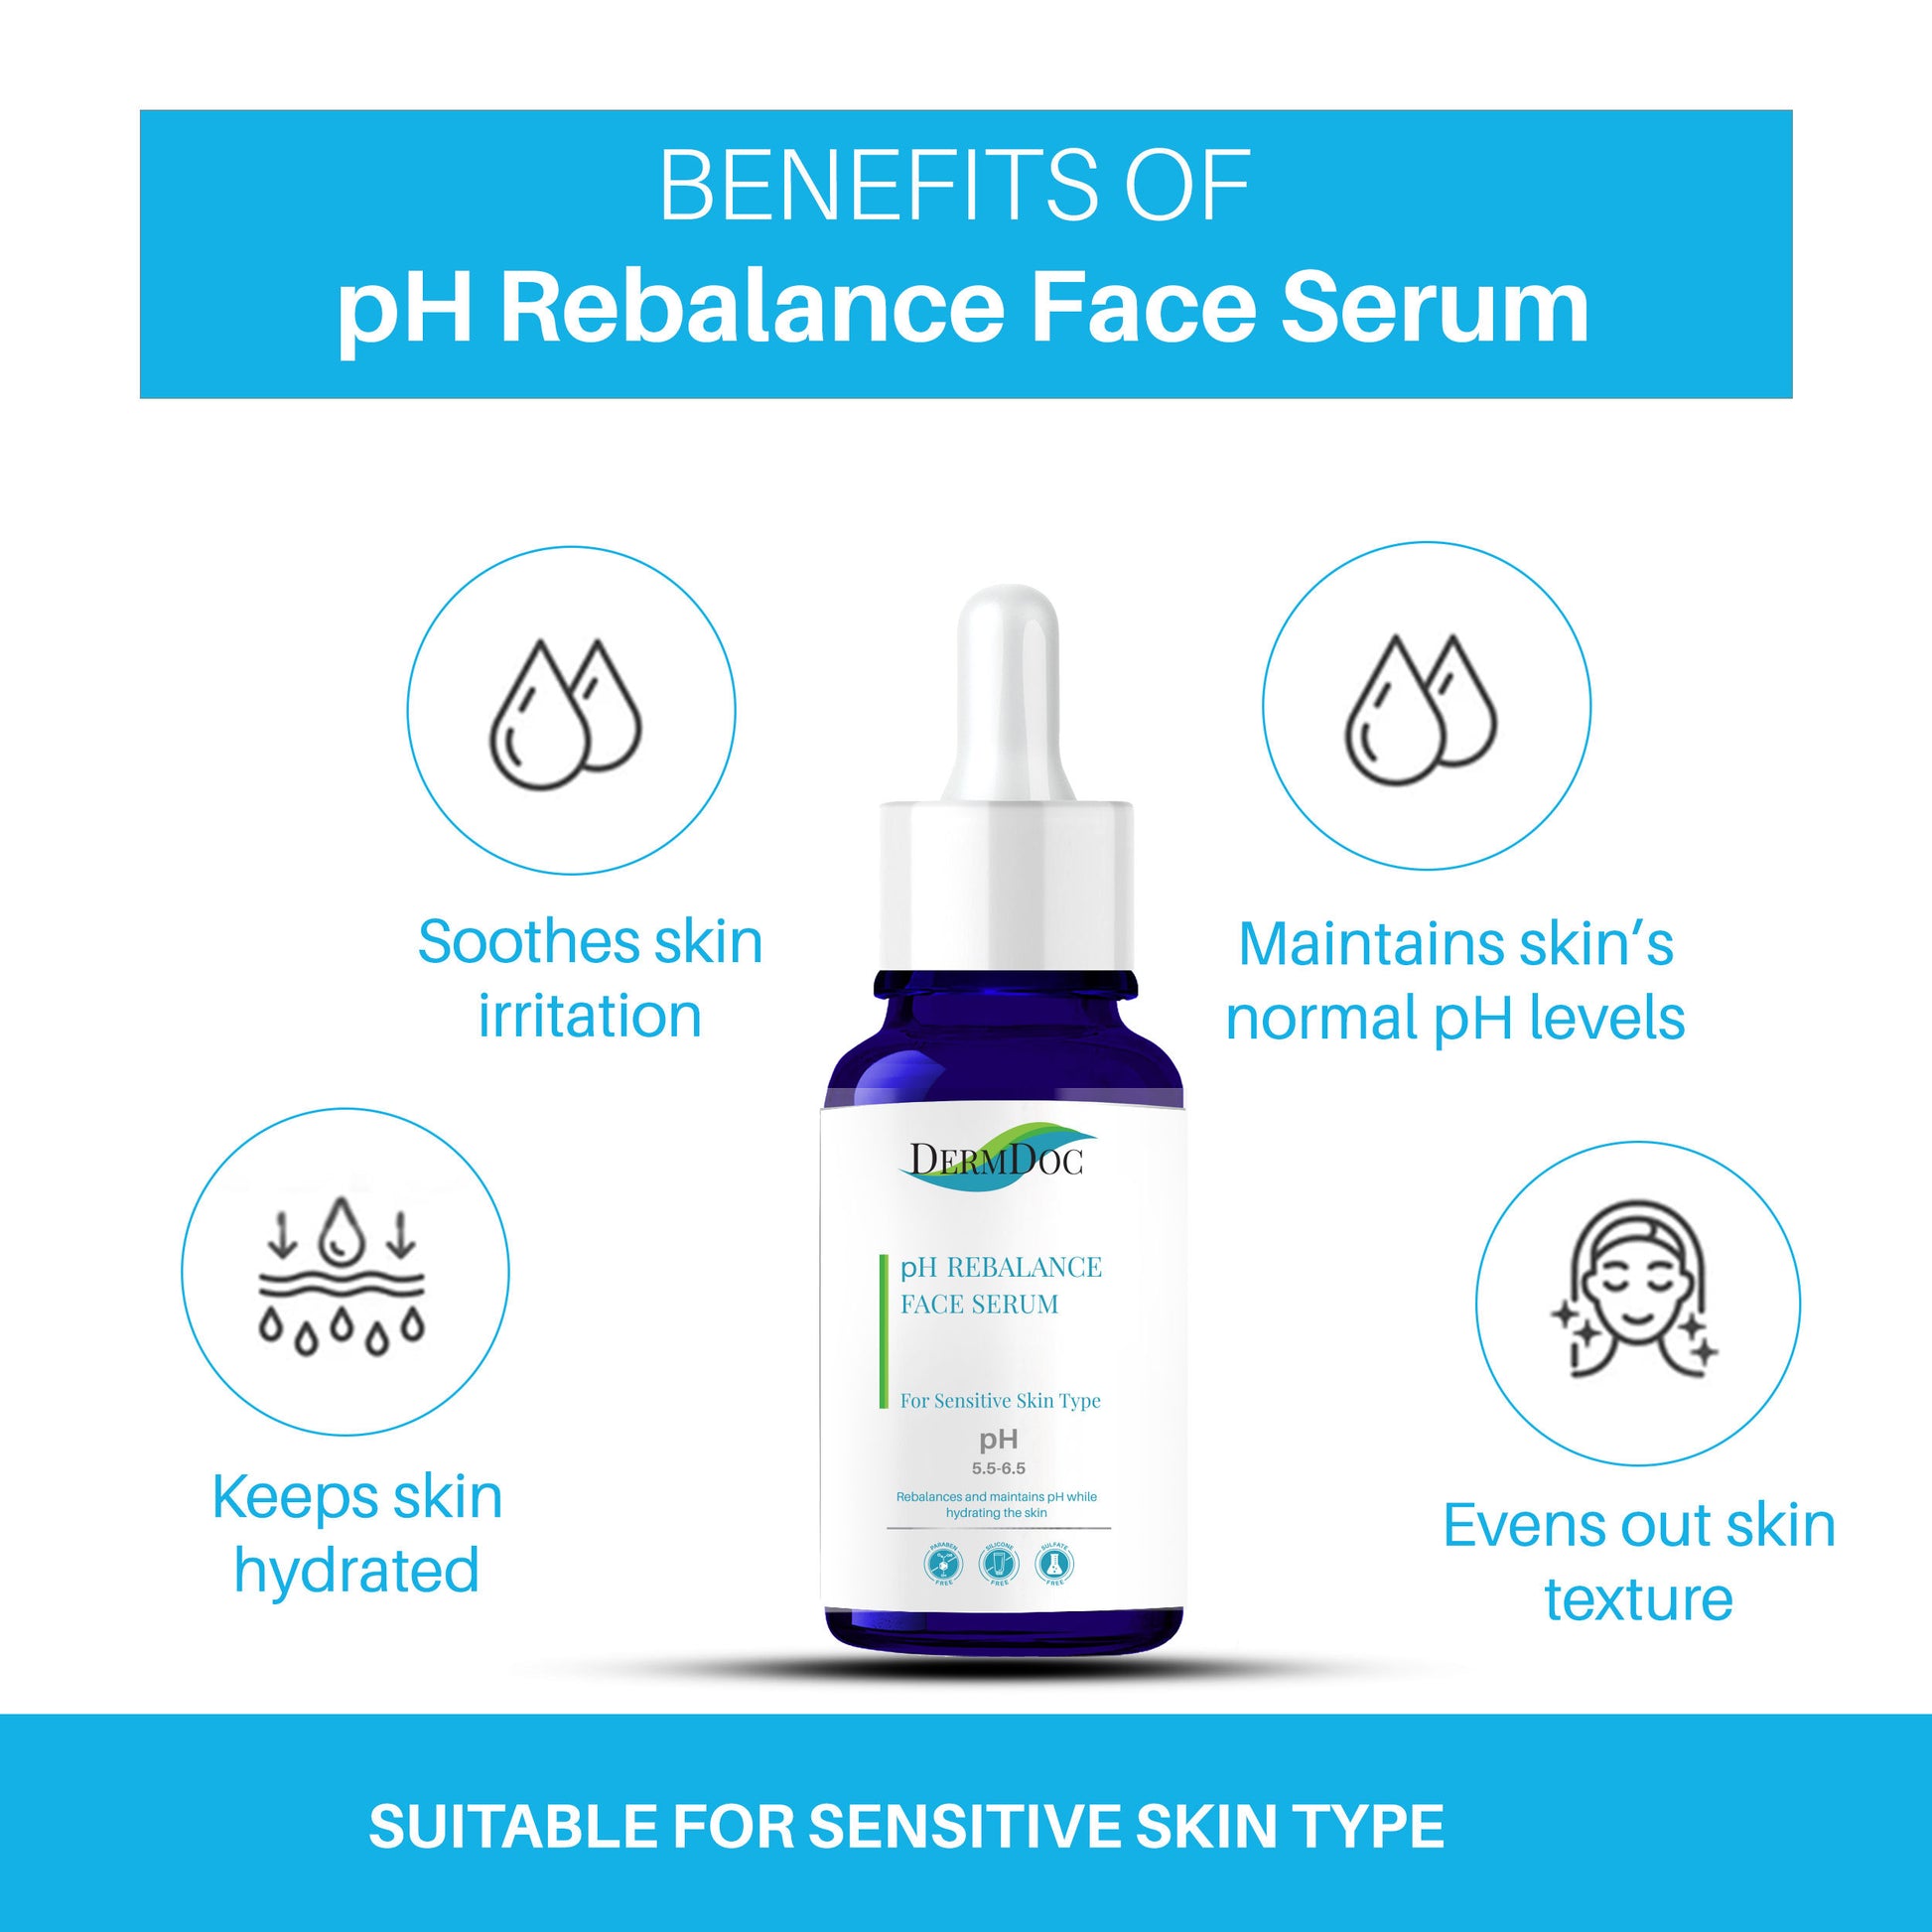 dermdoc-ph-rebalance-face-serum-for-sensitive-skin-type-15-ml-3